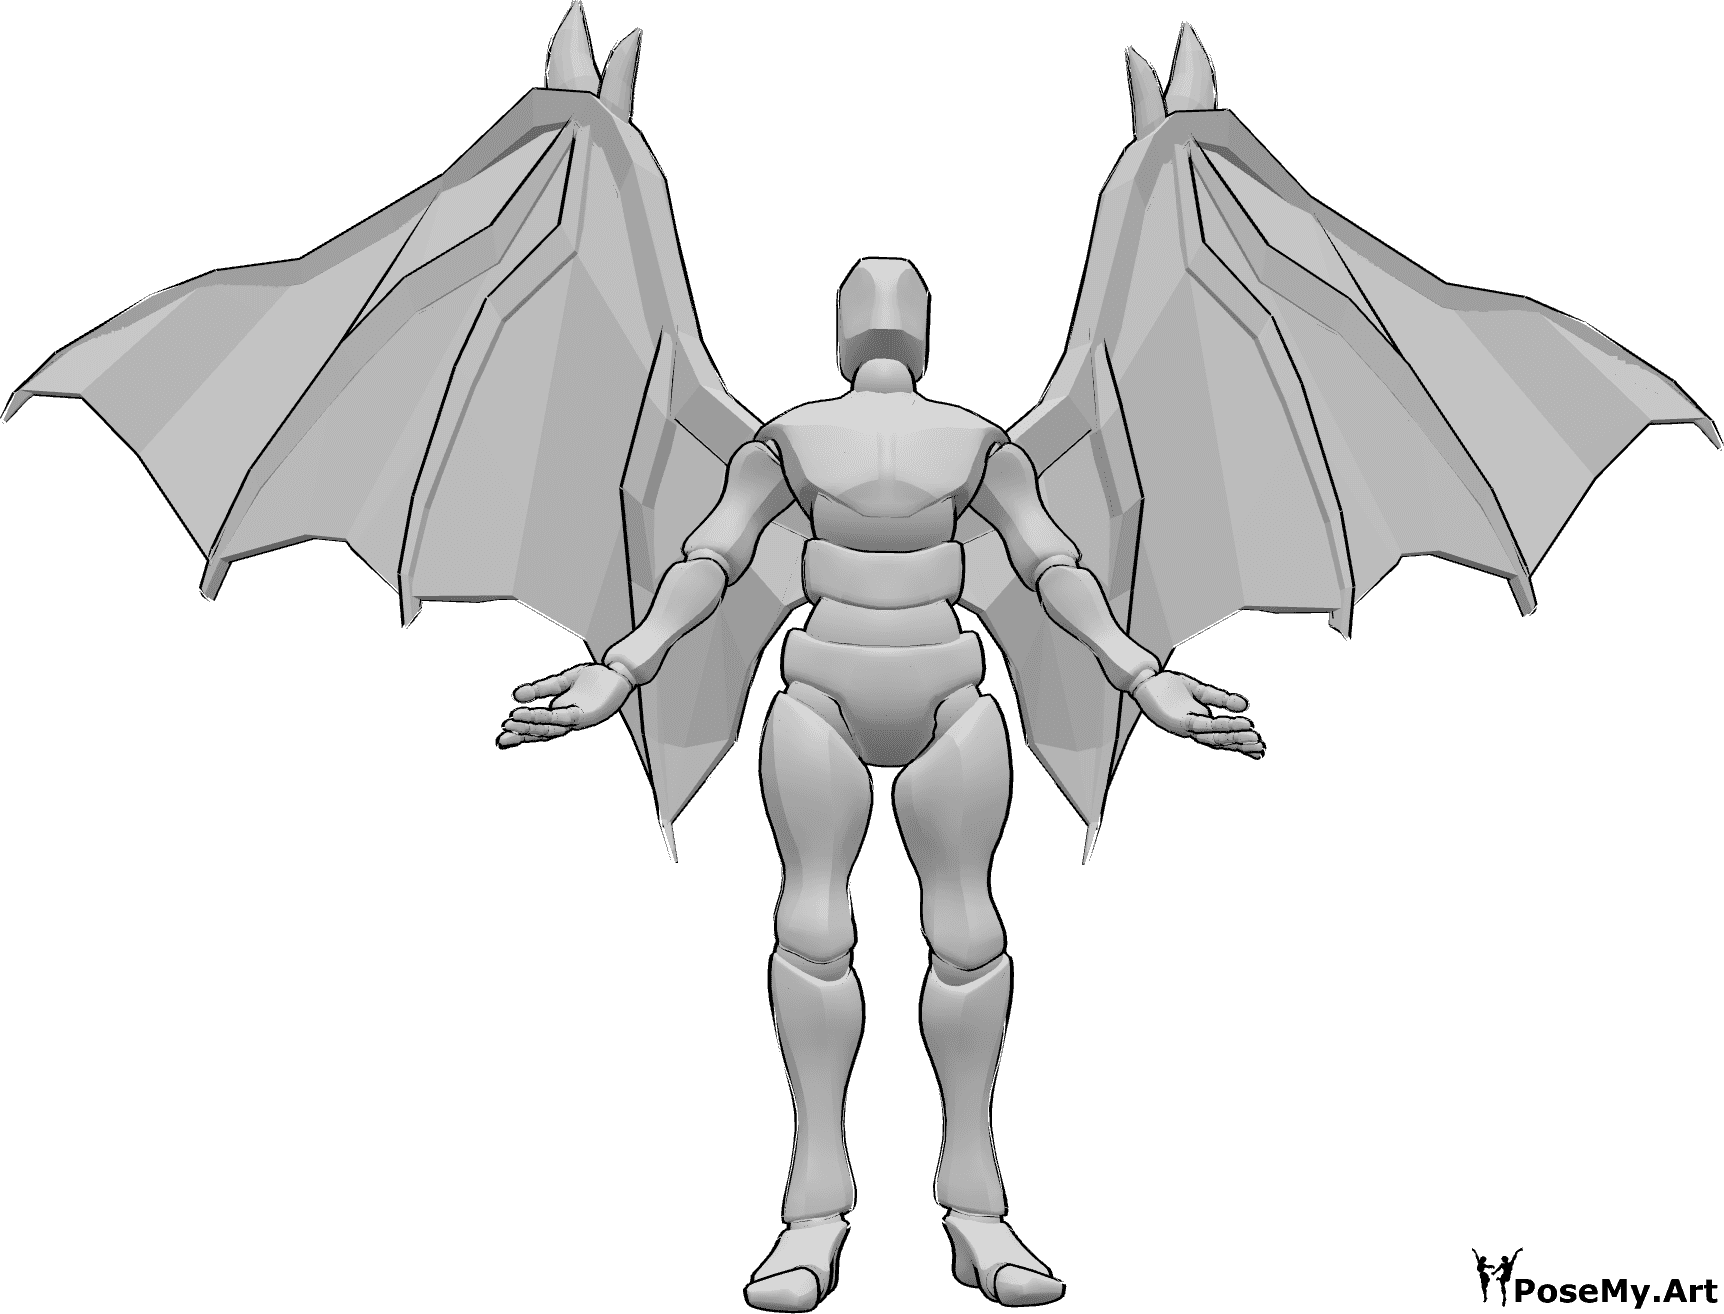 Référence des poses- Ailes de diable en position debout - Homme avec des ailes de diable, debout, regardant vers le haut et levant les mains.